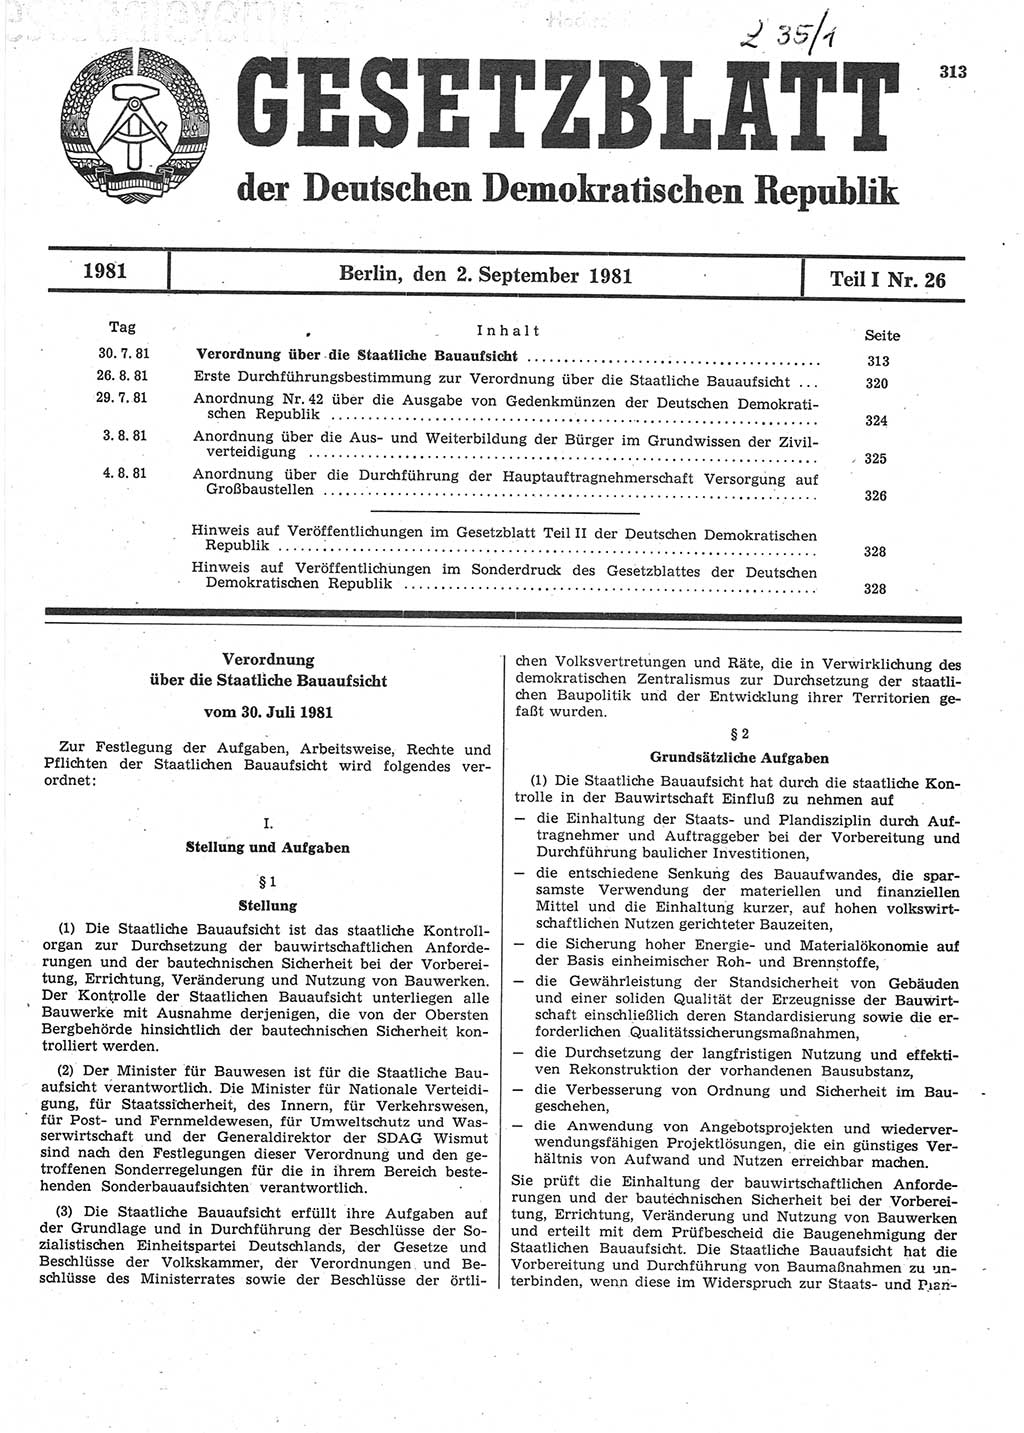 Gesetzblatt (GBl.) der Deutschen Demokratischen Republik (DDR) Teil Ⅰ 1981, Seite 313 (GBl. DDR Ⅰ 1981, S. 313)